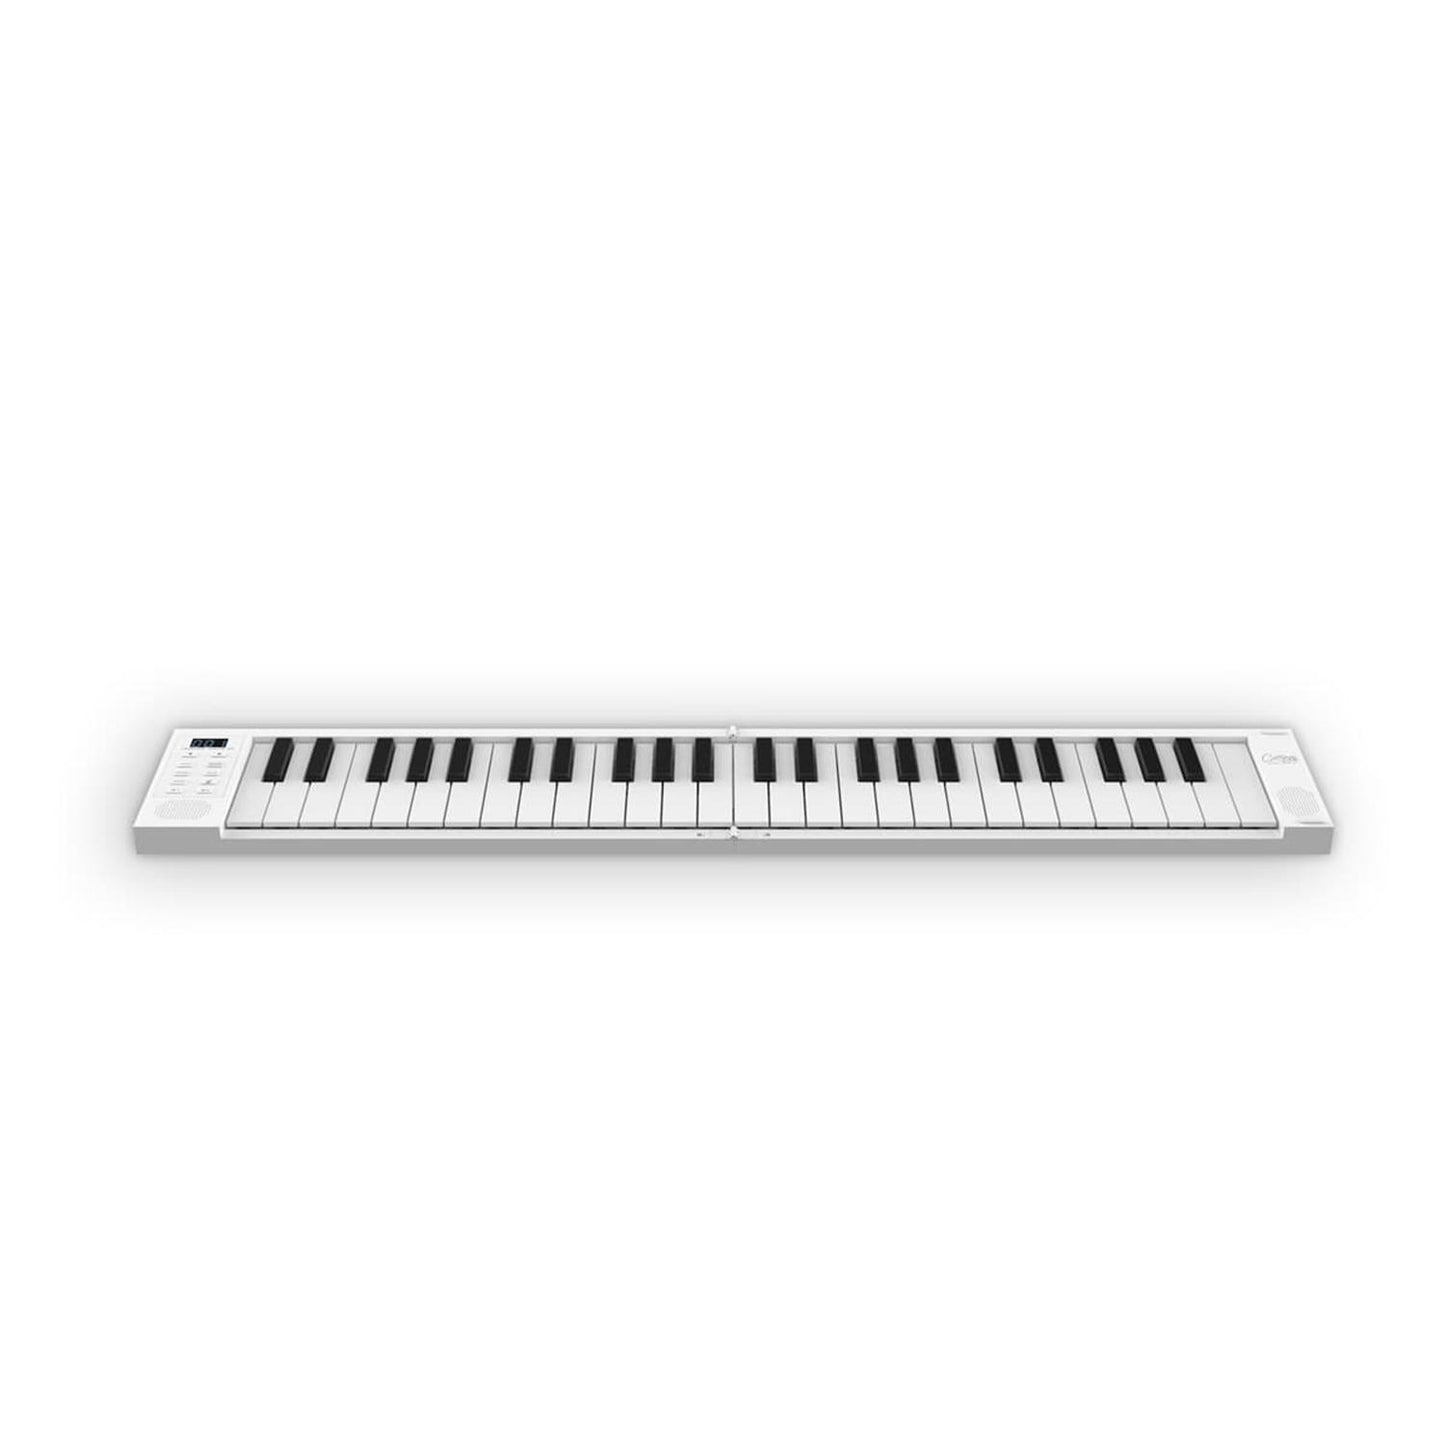 Teclado y Controlador MIDI Plegable FOLDING PIANO 49 CARRY-ON